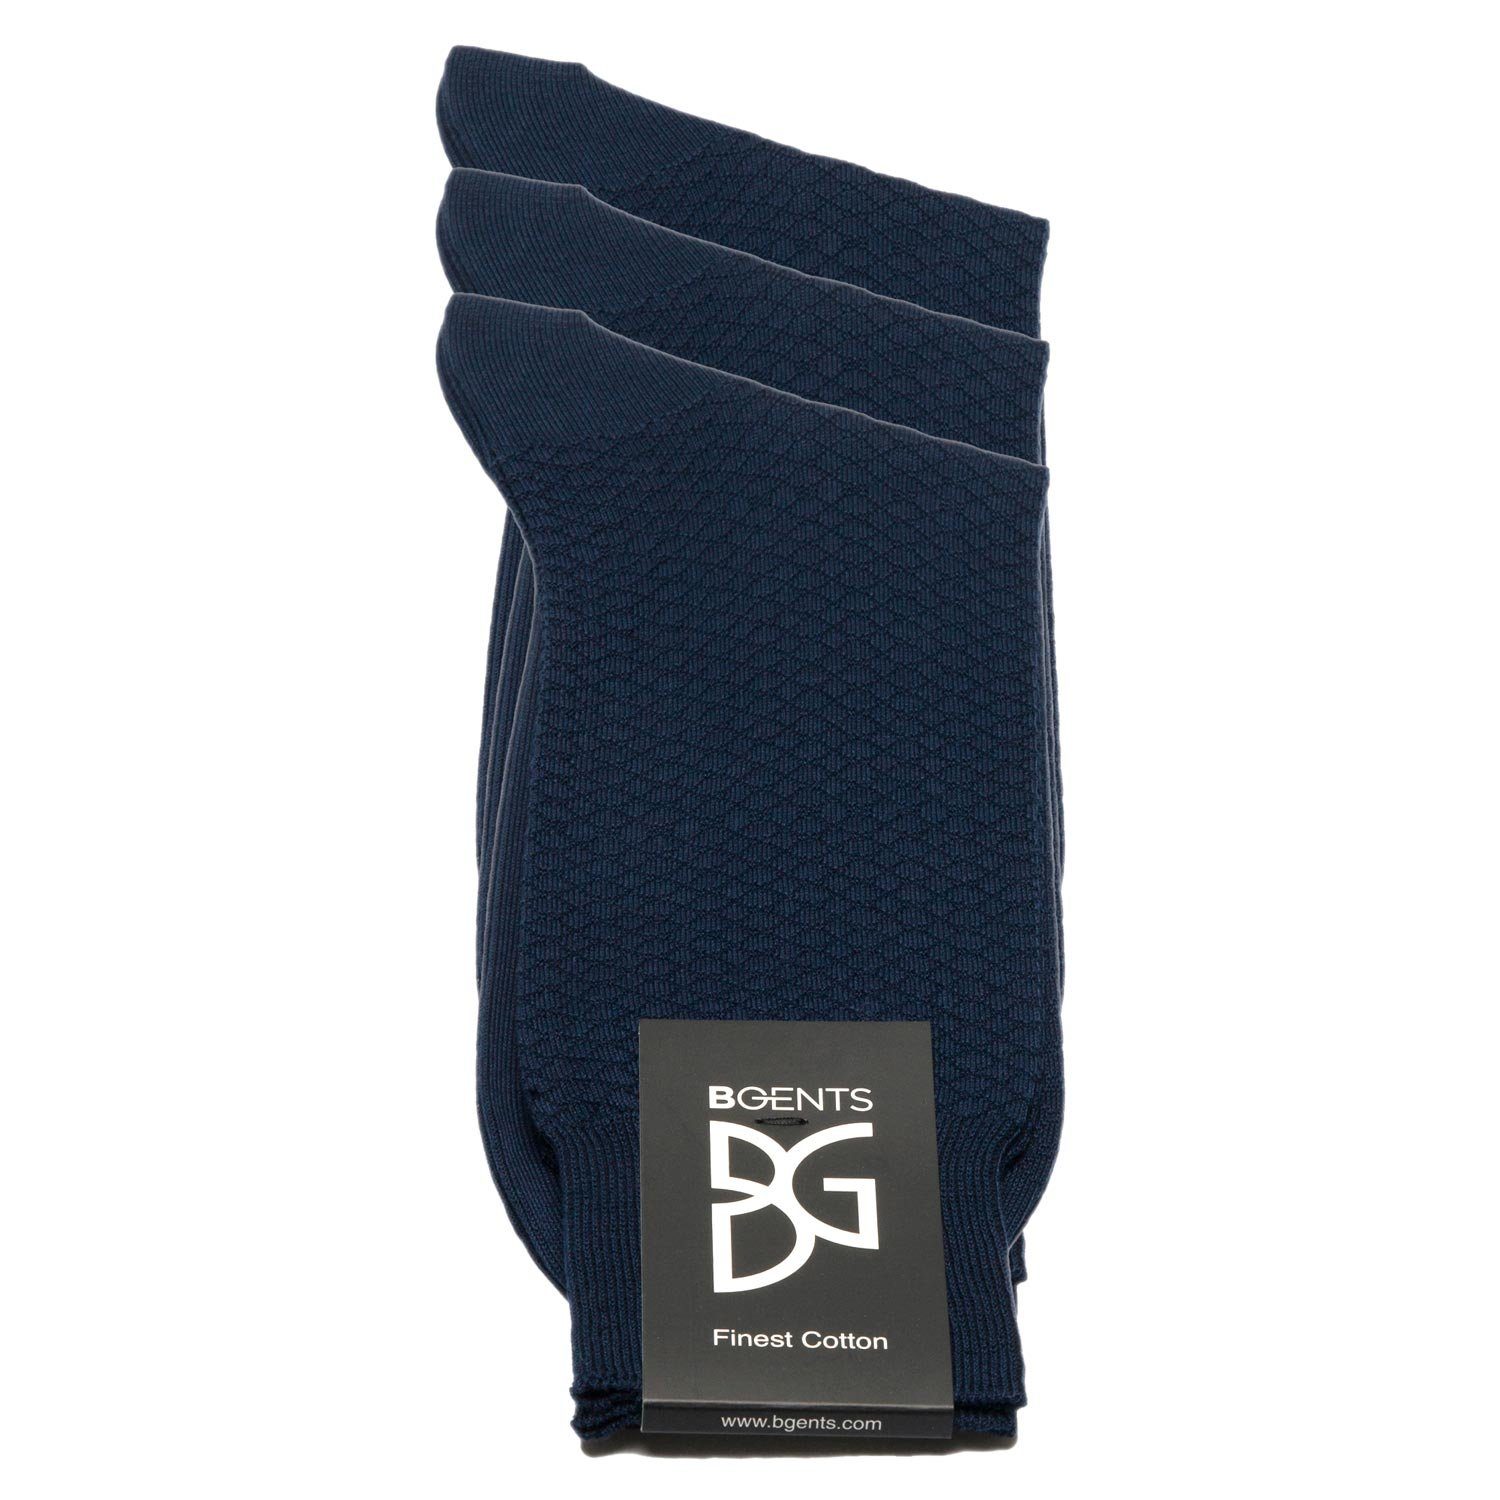 3er Businesssocken Classic Packung) Baumwolle Marineblau reiner (3er BGENTS 3er merzerisierter aus - Socken Frankfurt Packung, Socken